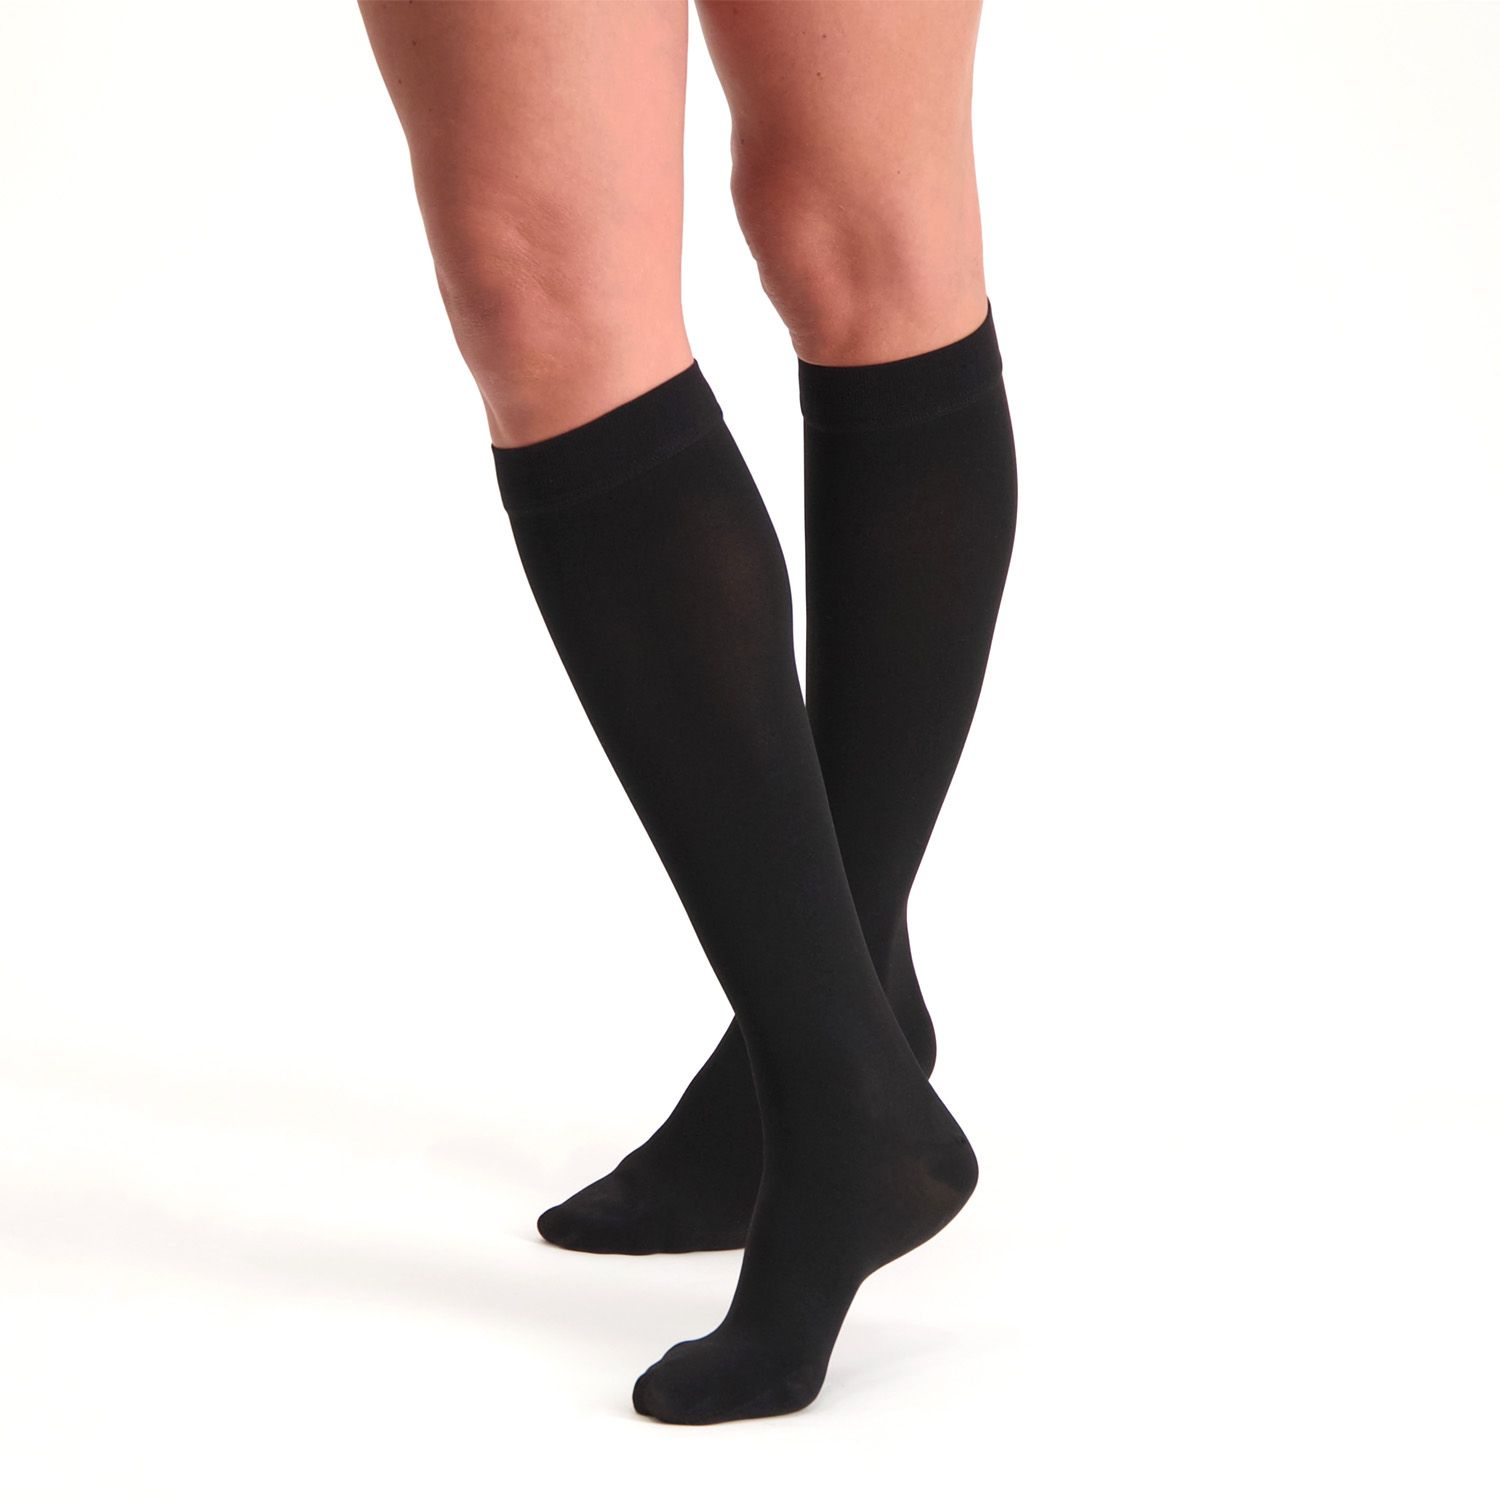 dunimed premium comfort compression stockings short closed toe black